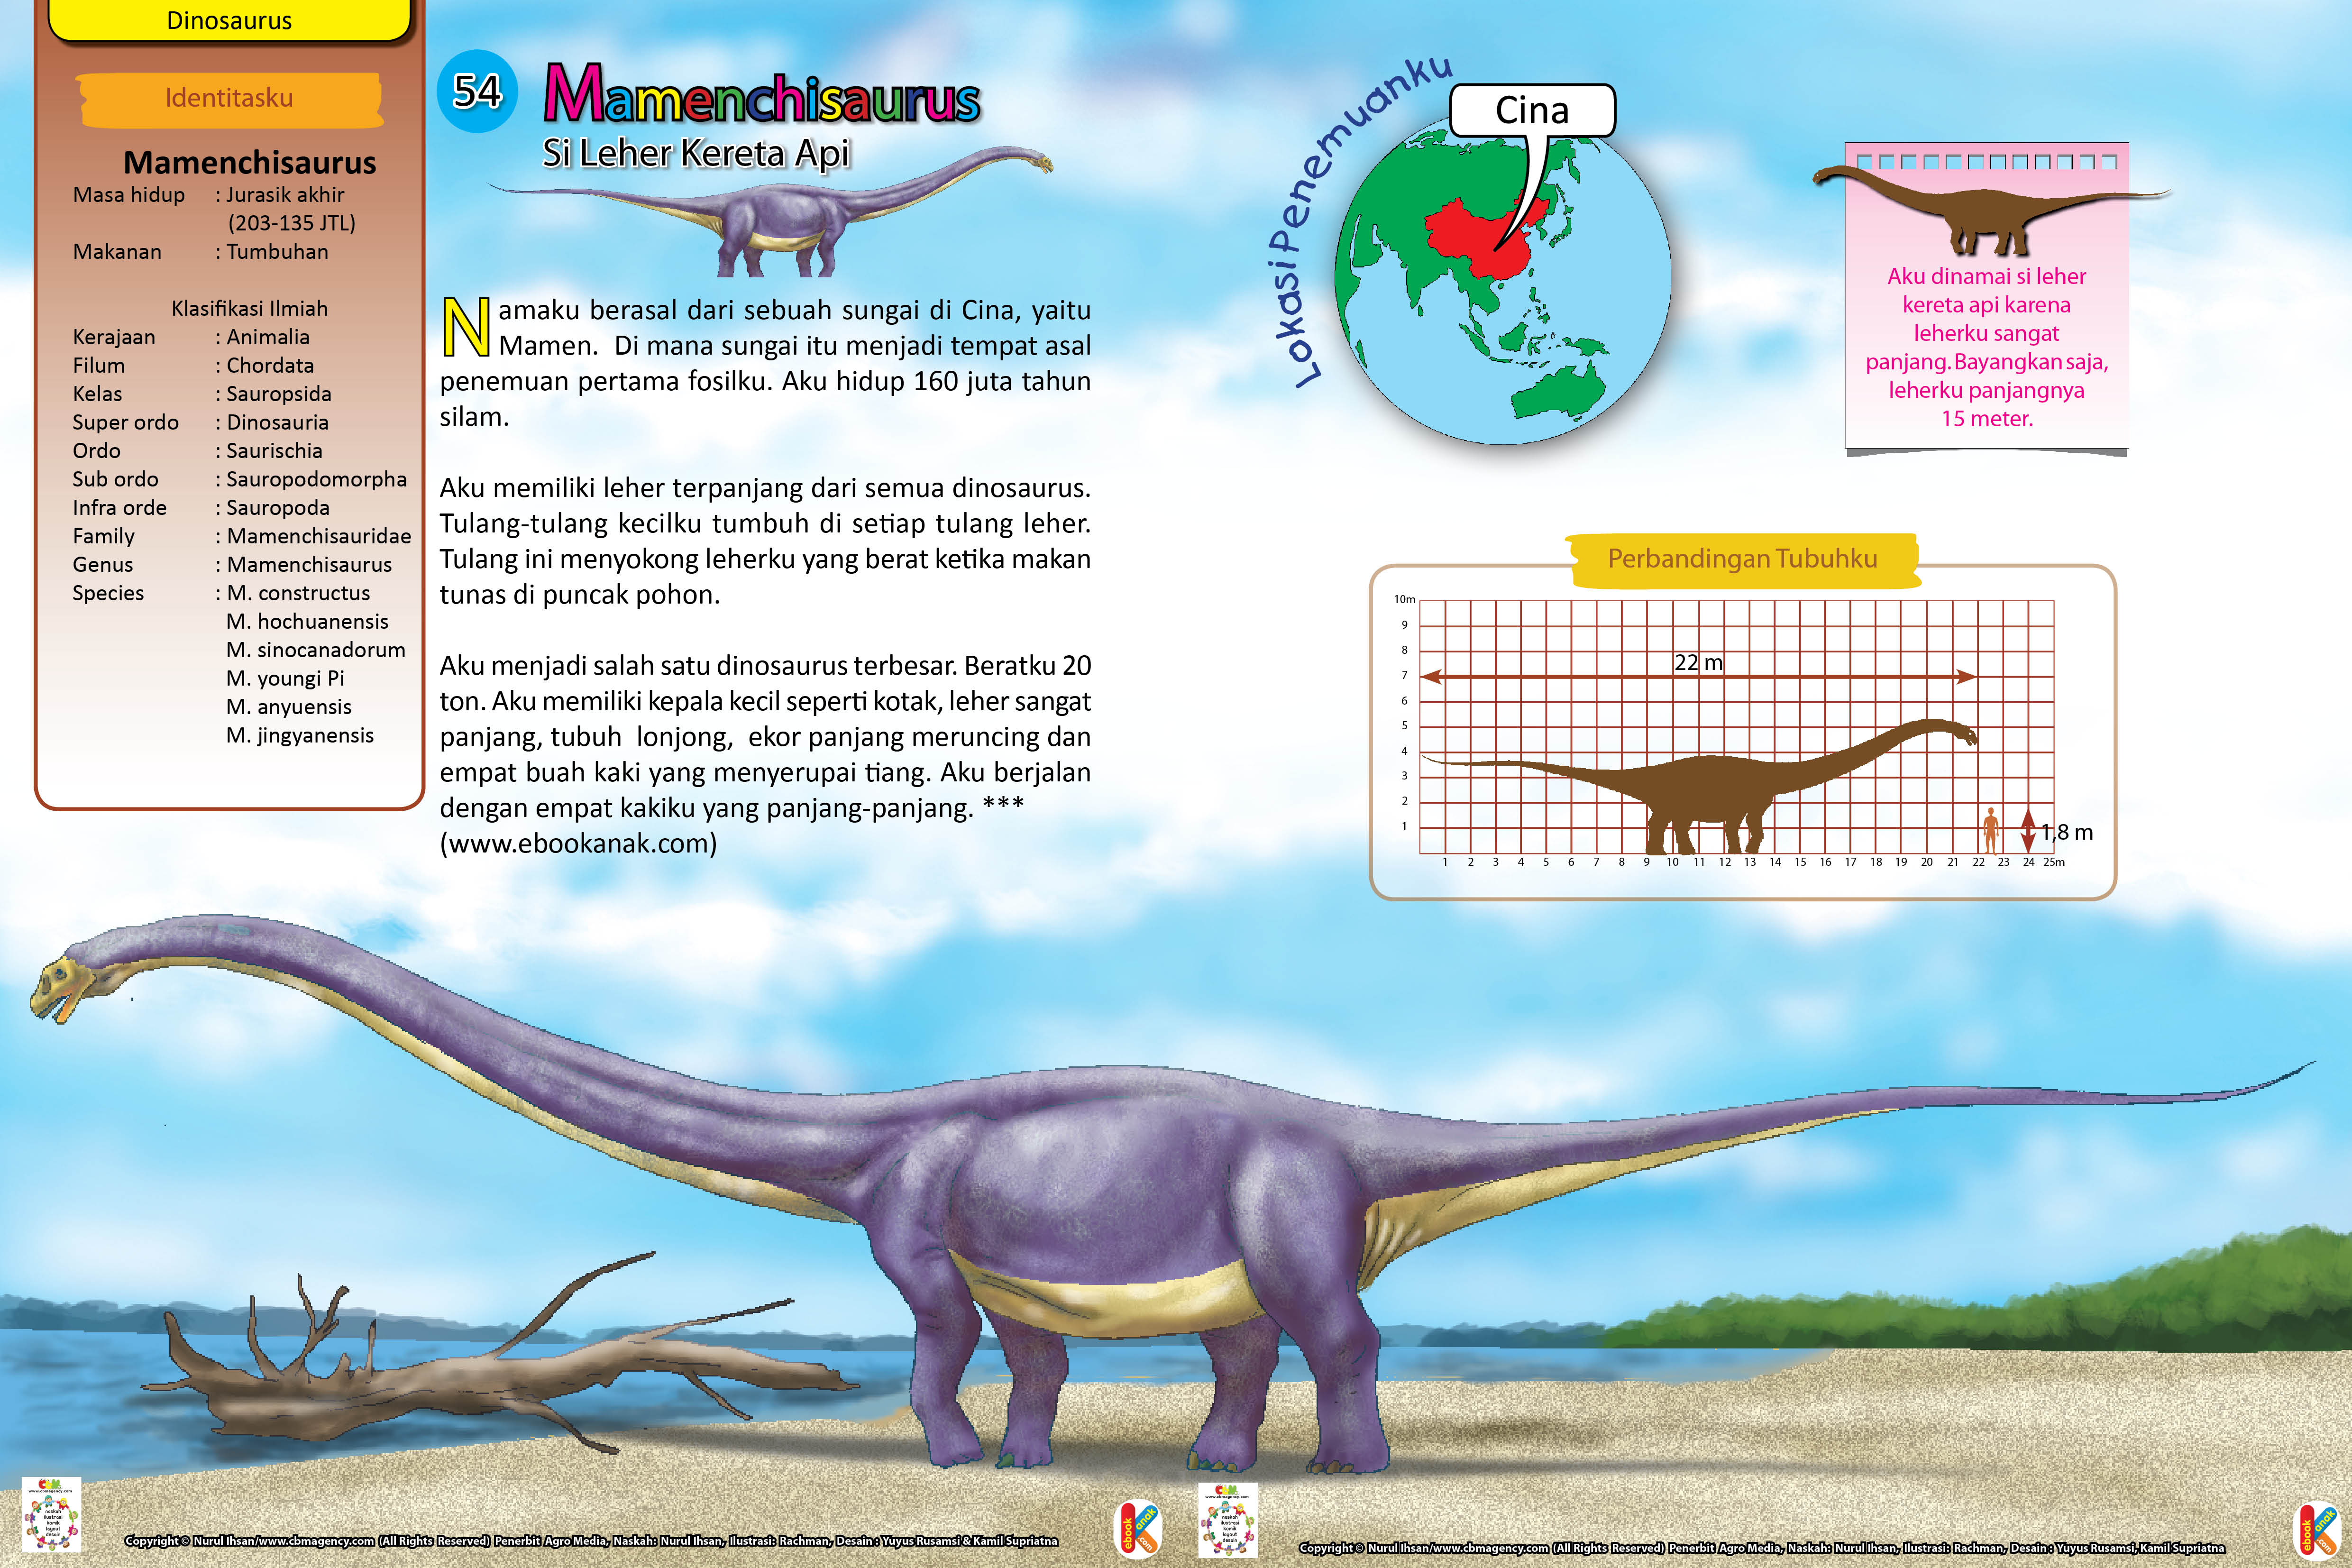 Dinosaurus Mamenchisaurus memiliki leher terpanjang dari semua dinosaurus.